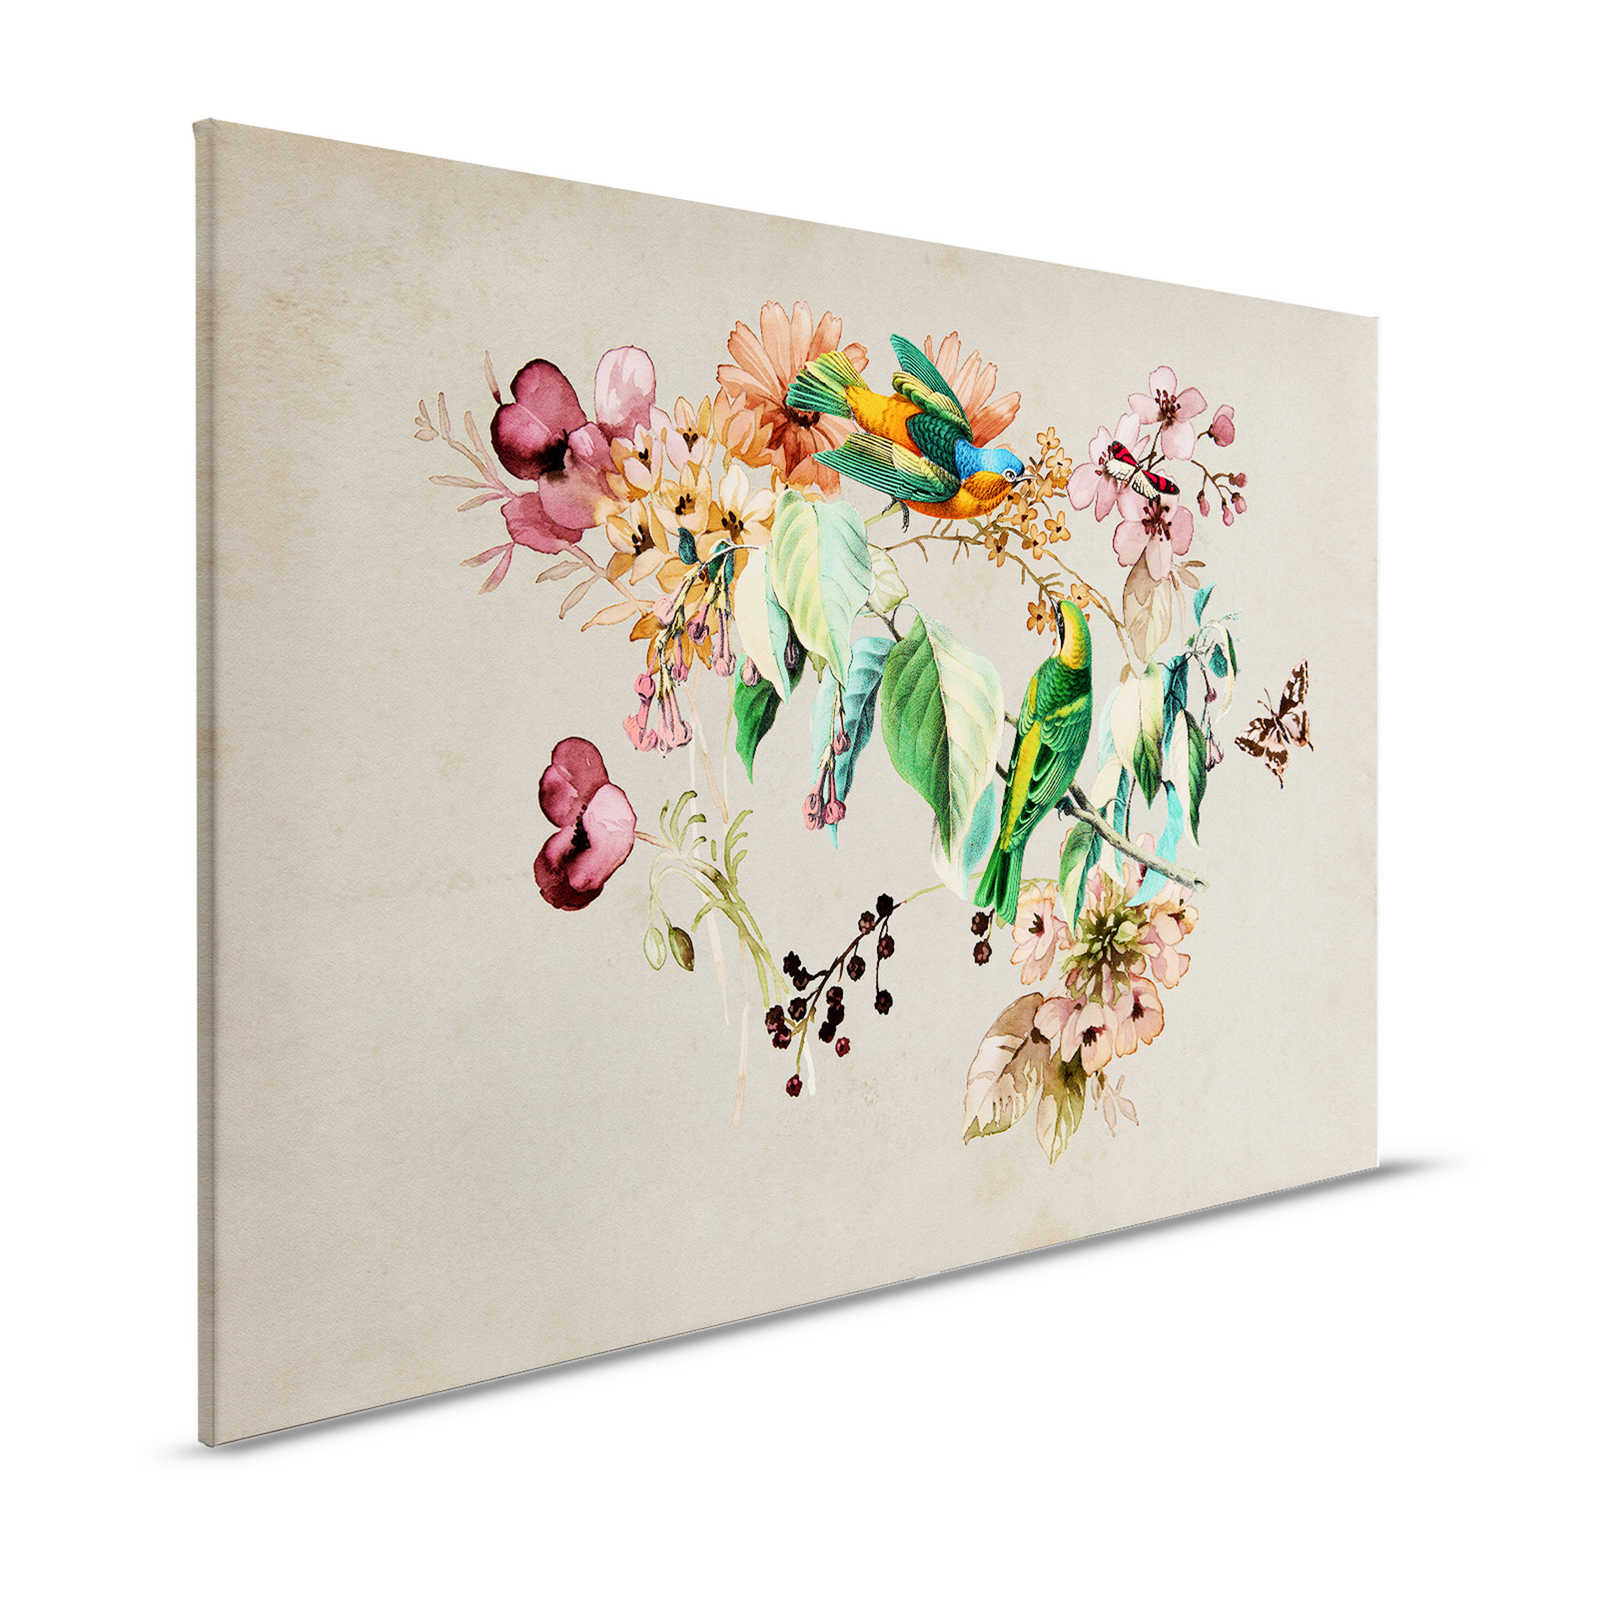 Love Nest 1 - Canvas schilderij met aquarel bloemen & kleurrijke vogels - 1.20 m x 0.80 m
